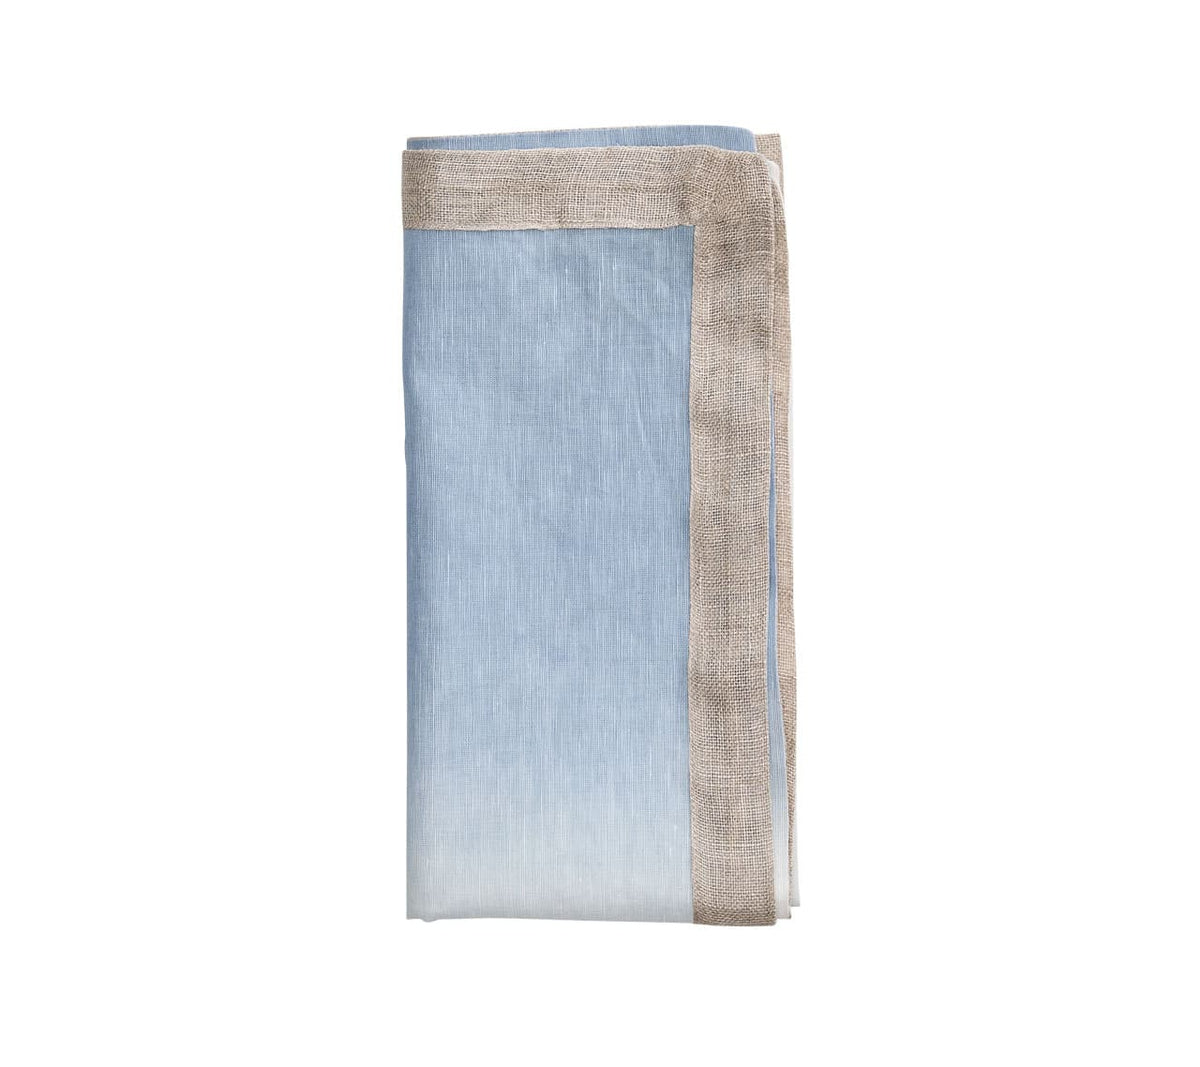 Kim Seybert Luxury Dip Dye Napkin in white & periwinkle, folded